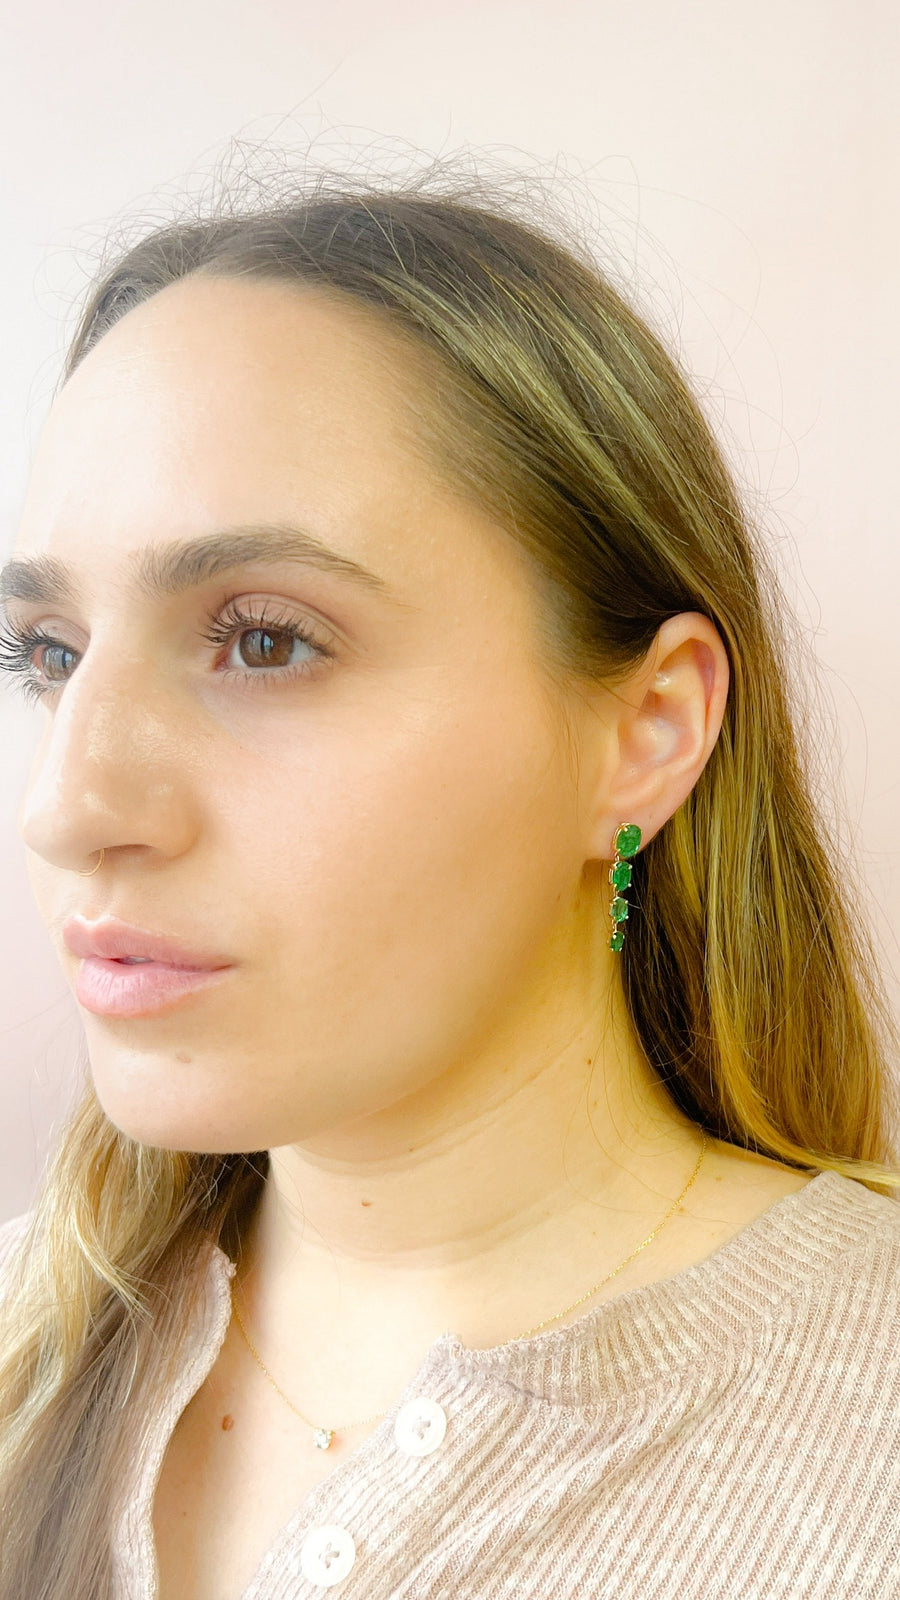 Graduating Emerald Drop Earrings